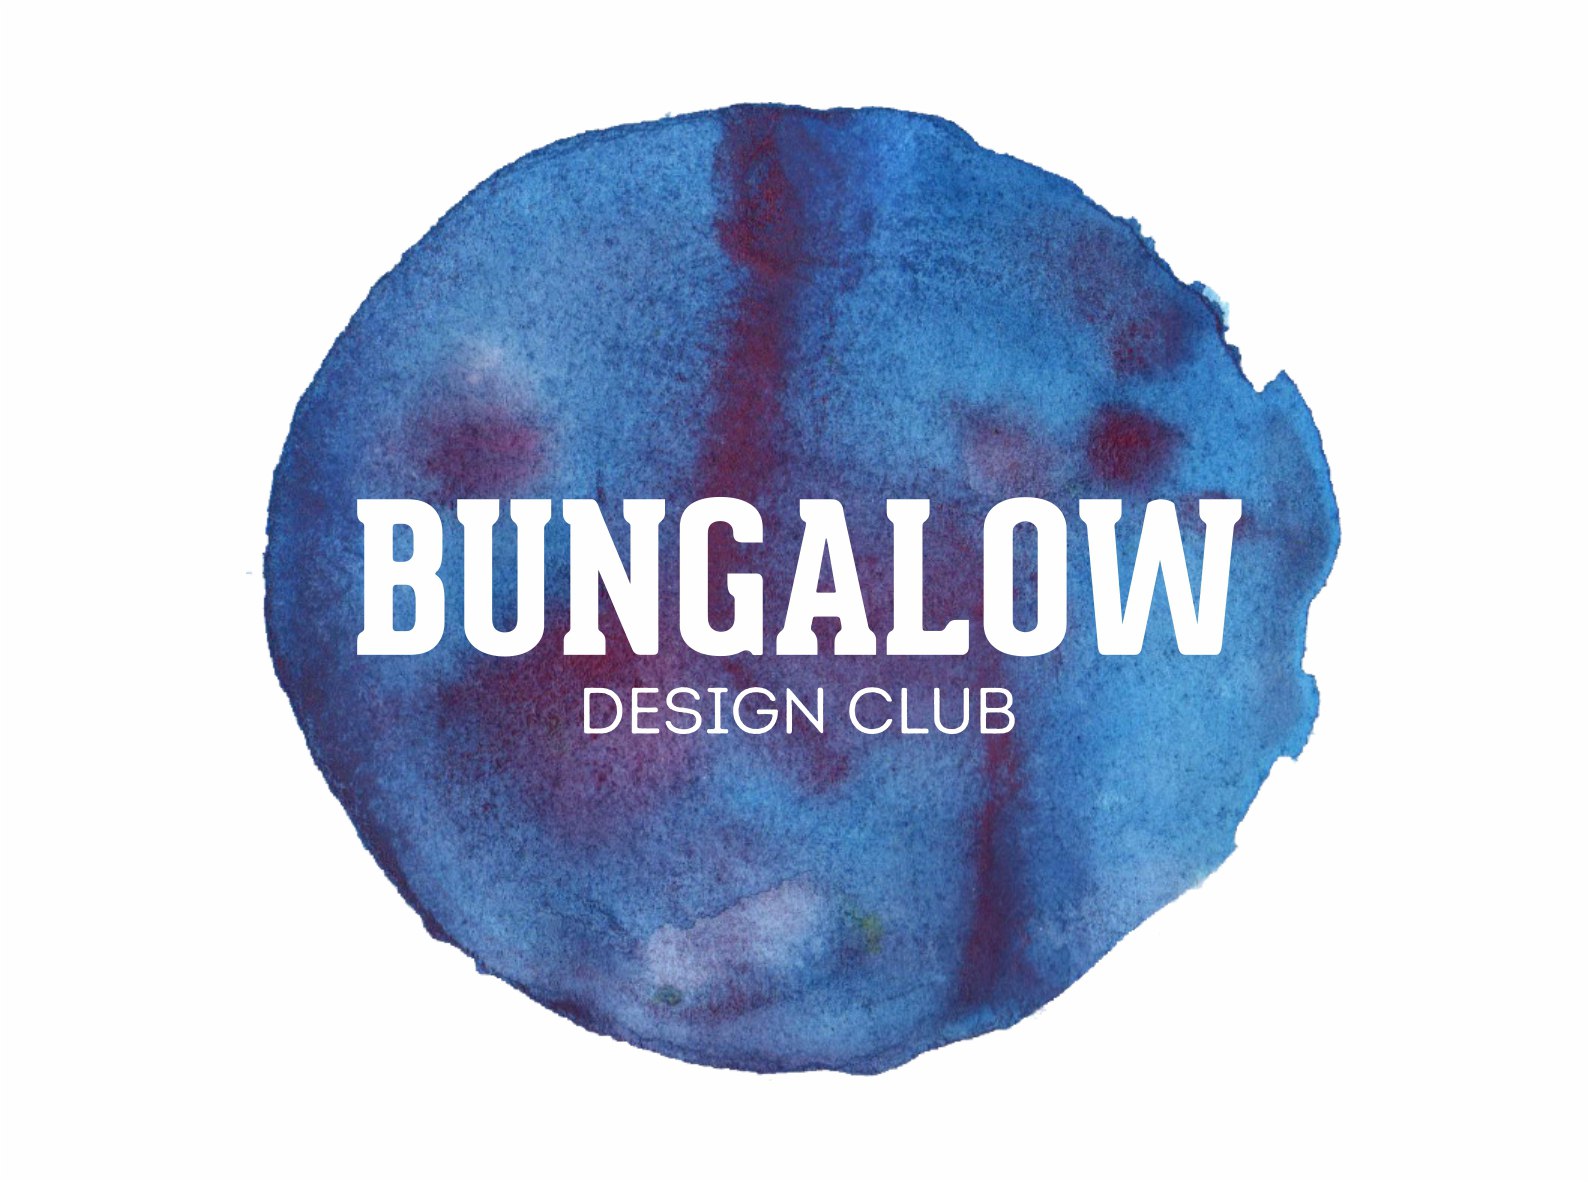 Bungalow design